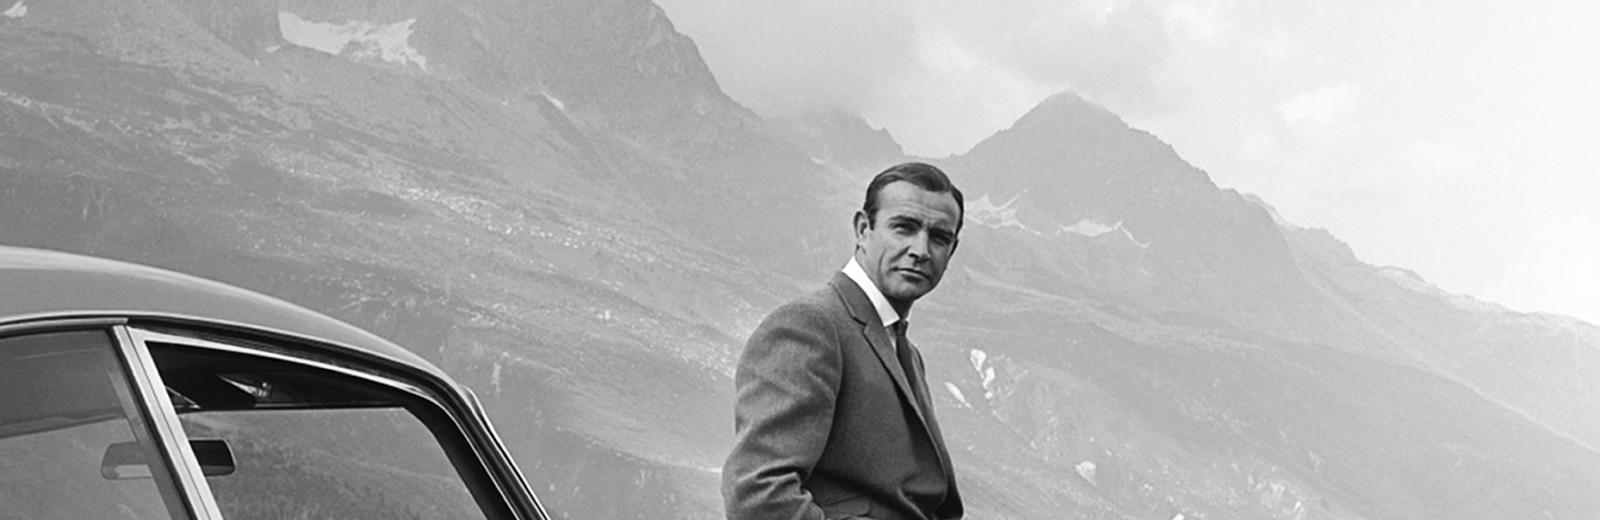 James Bond, alias 007, sta aspettando Auric Goldfinger sul Passo del Furka, in Svizzera, dove si svolge anche il famoso inseguimento a bordo dell’Aston Martin DB5.